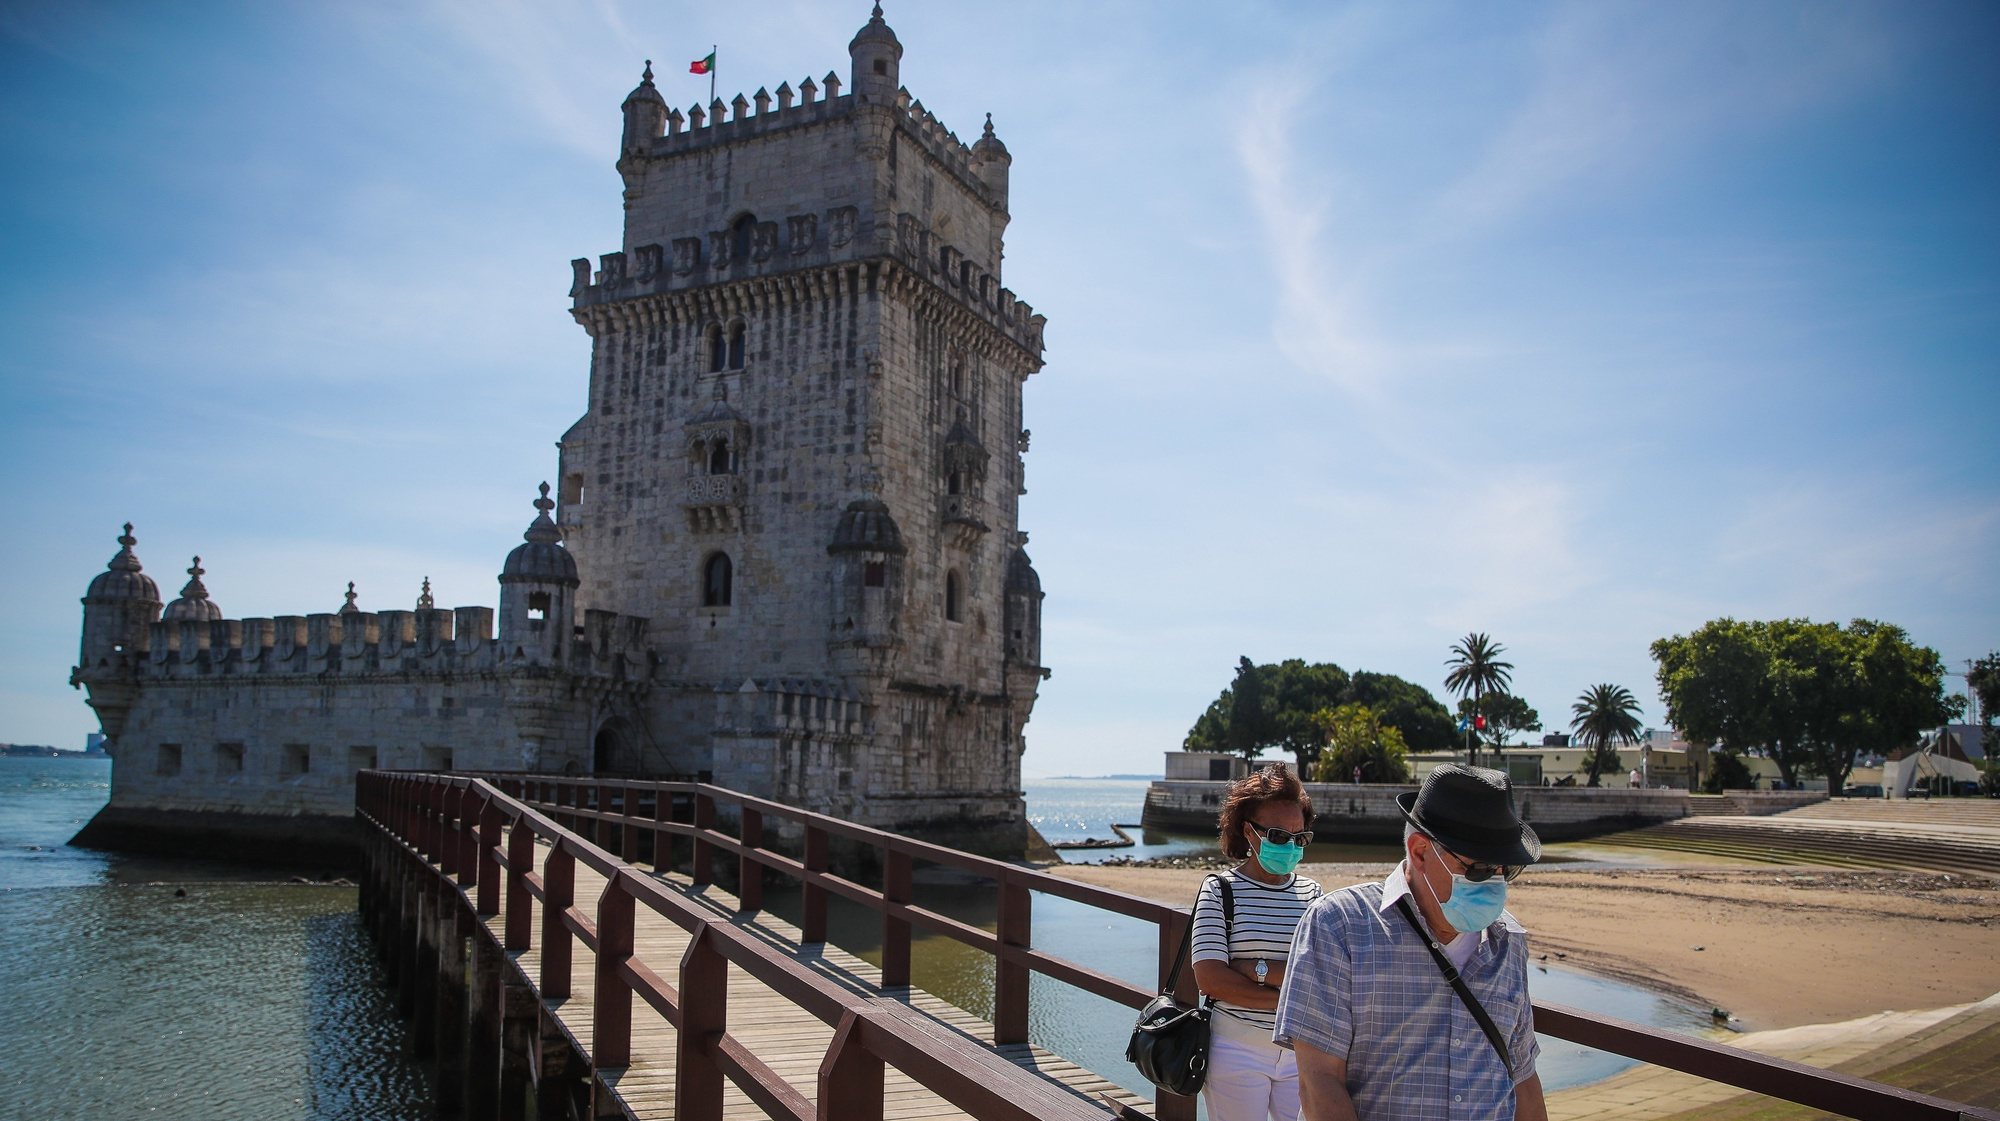 Pessoas visitam a Torre de Belém por ocasião da reabertura ao público no Dia Internacional dos Museus, em Lisboa,18 de maio de 2020. Os espaços museológicos, palácios, monumentos nacionais e galerias de arte estavam encerrados desde 14 de março devido á pandemia da covid-19. MÁRIO CRUZ/LUSA